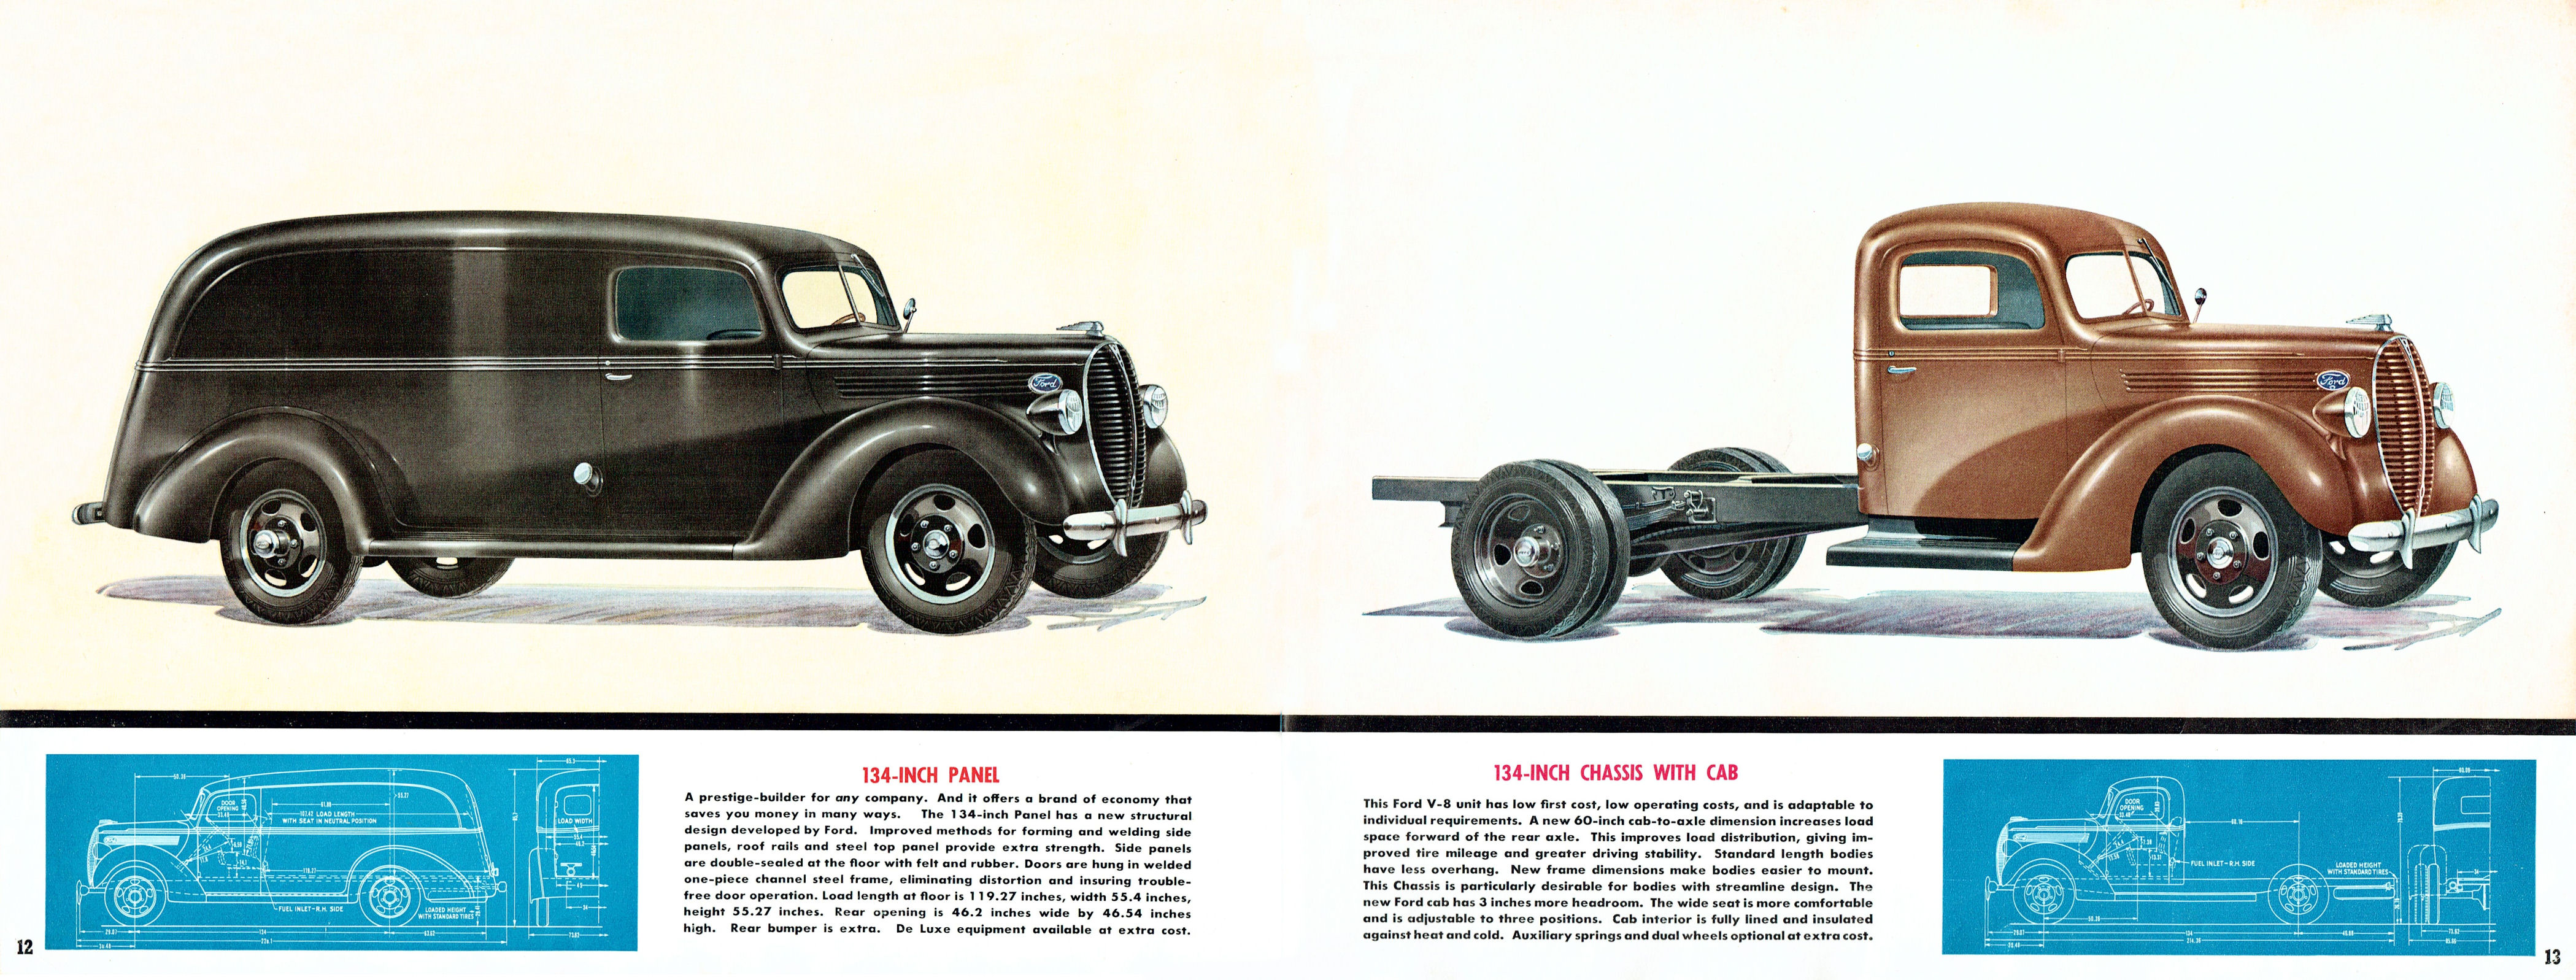 1938_Ford_Truck_Full_Line_Cdn-12-13